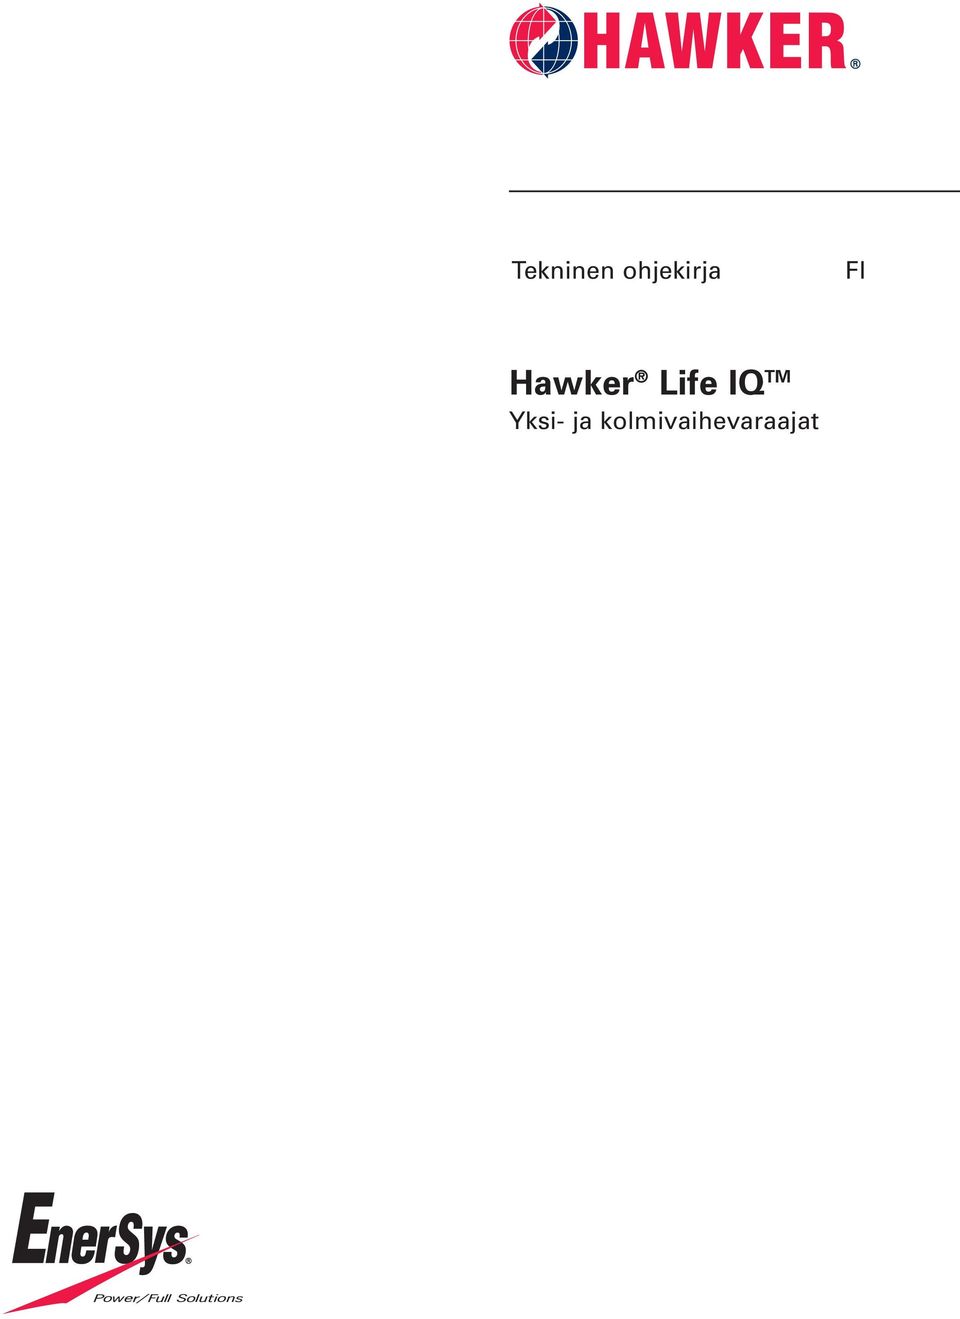 Hawker Life IQ TM